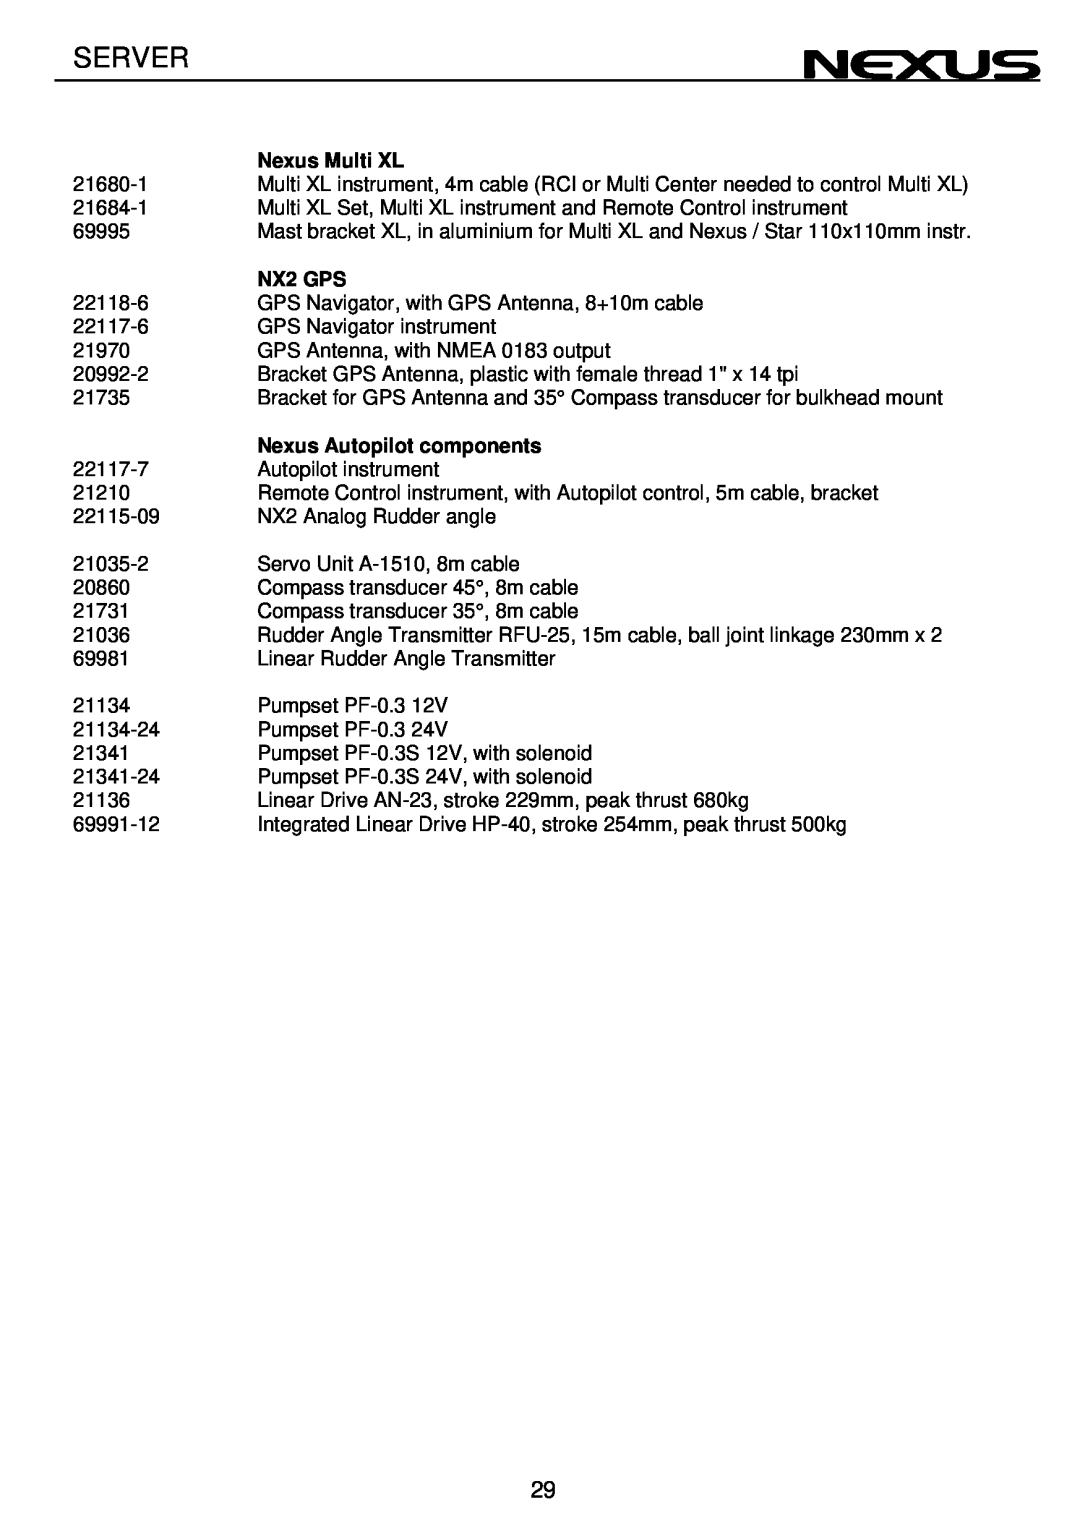 Nexus 21 operation manual Server, Nexus Multi XL, NX2 GPS, Nexus Autopilot components 